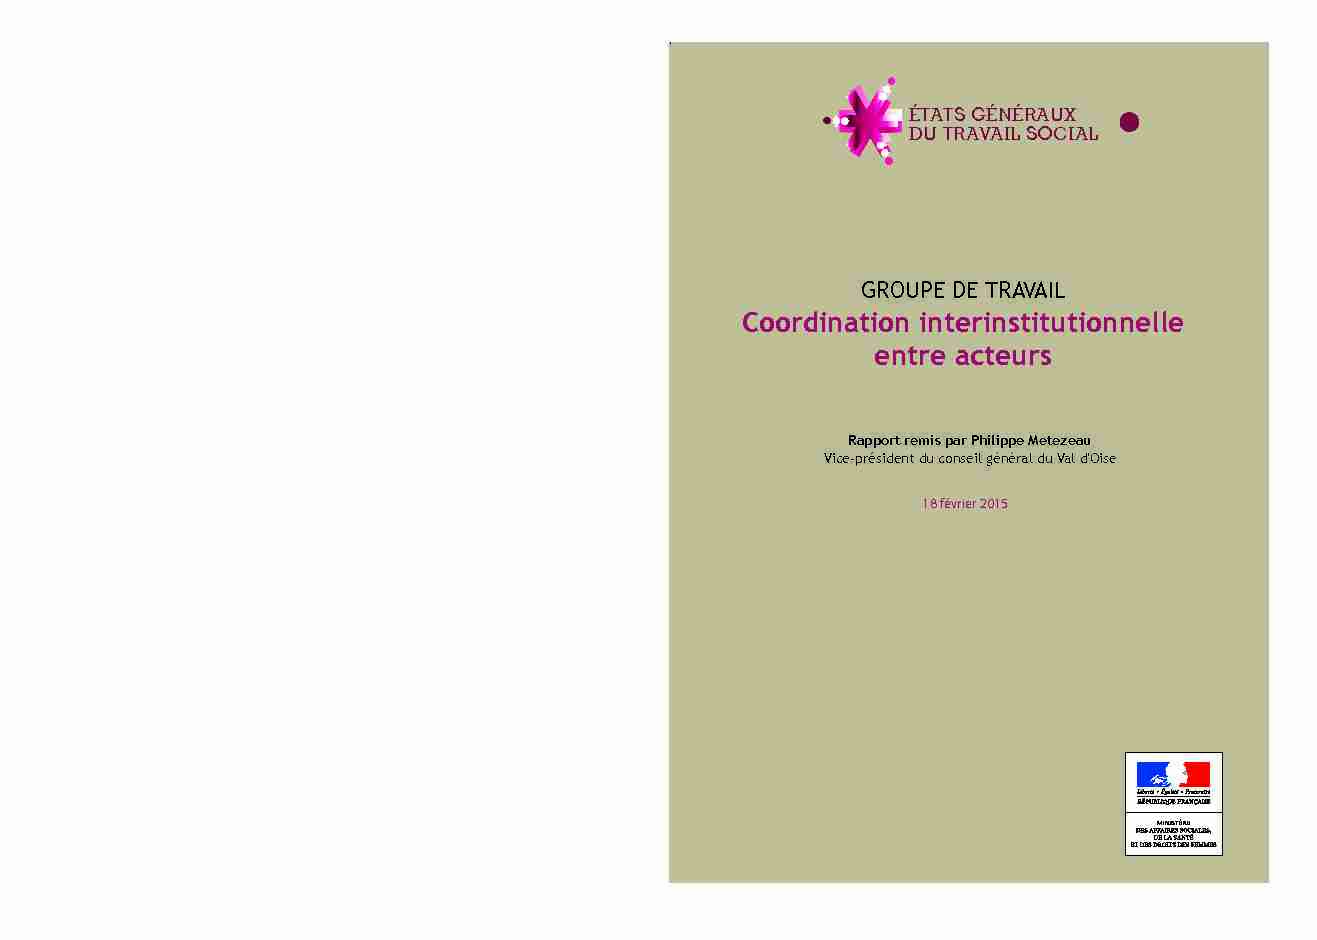 Coordination interinstitutionnelle entre acteurs